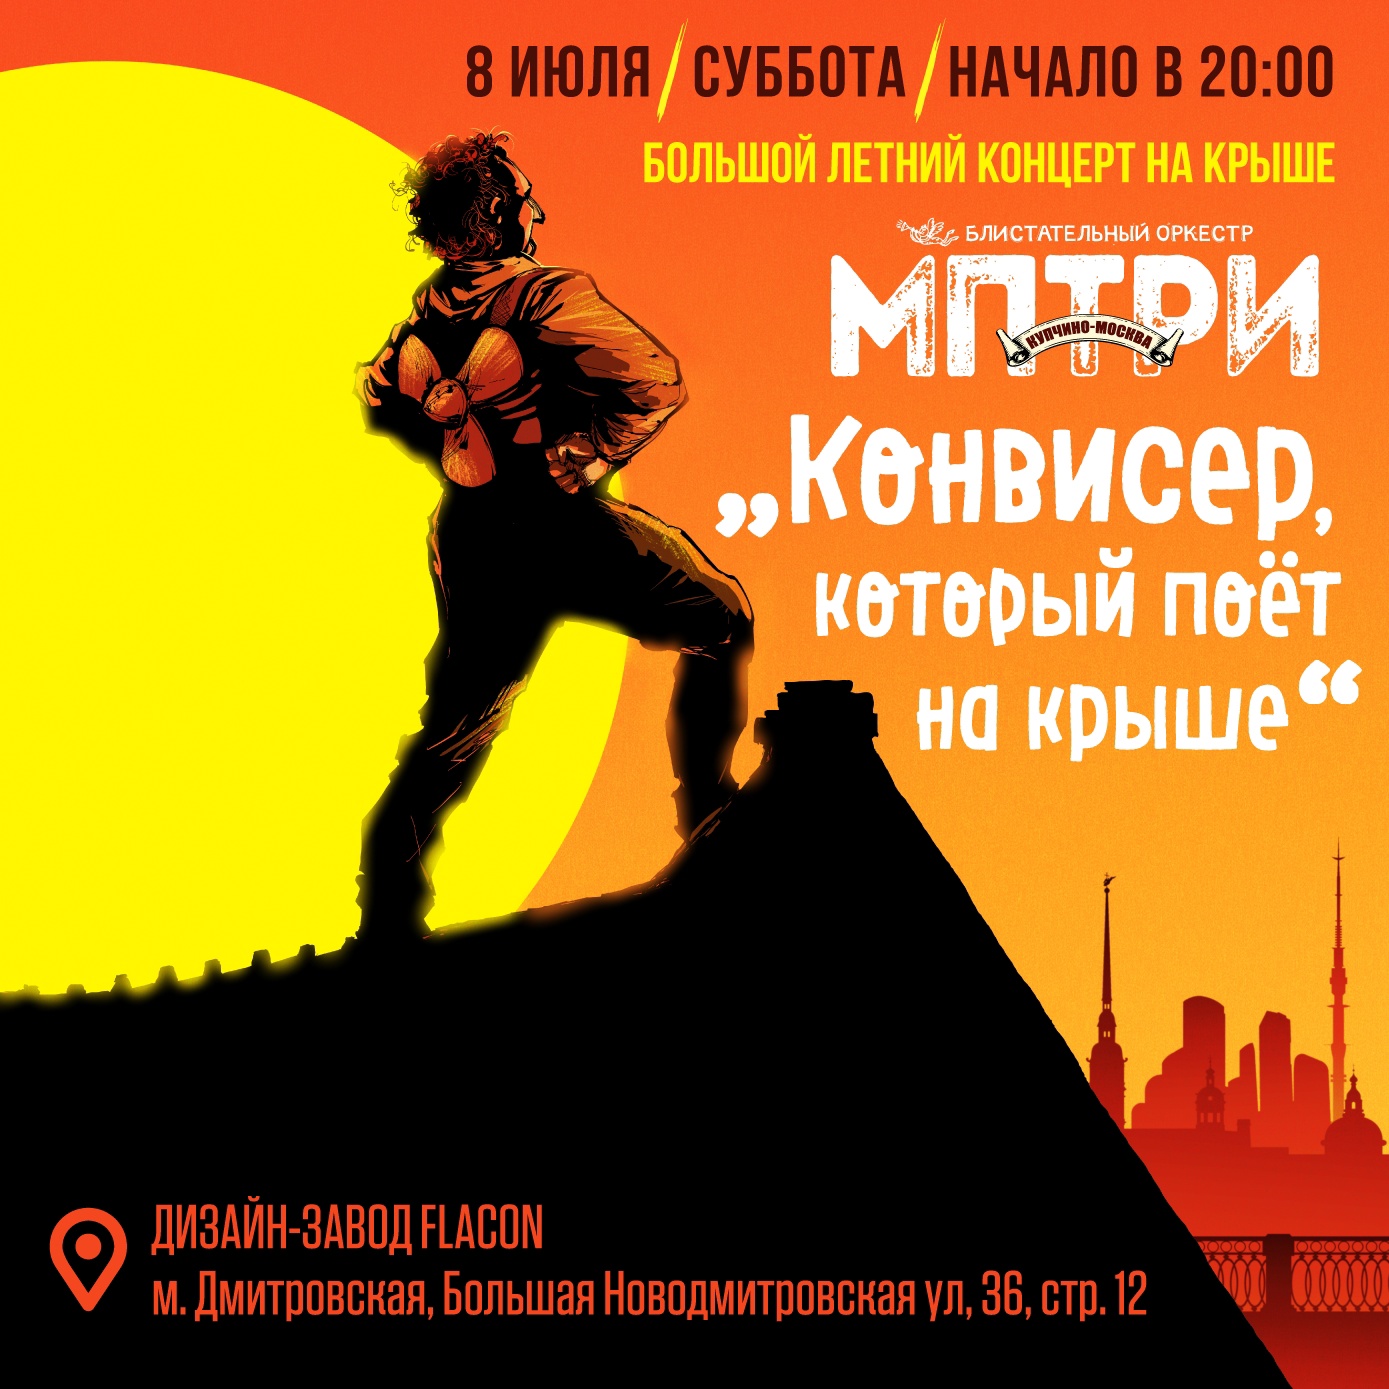 МПТРИ сыграли концерт на московской крыше